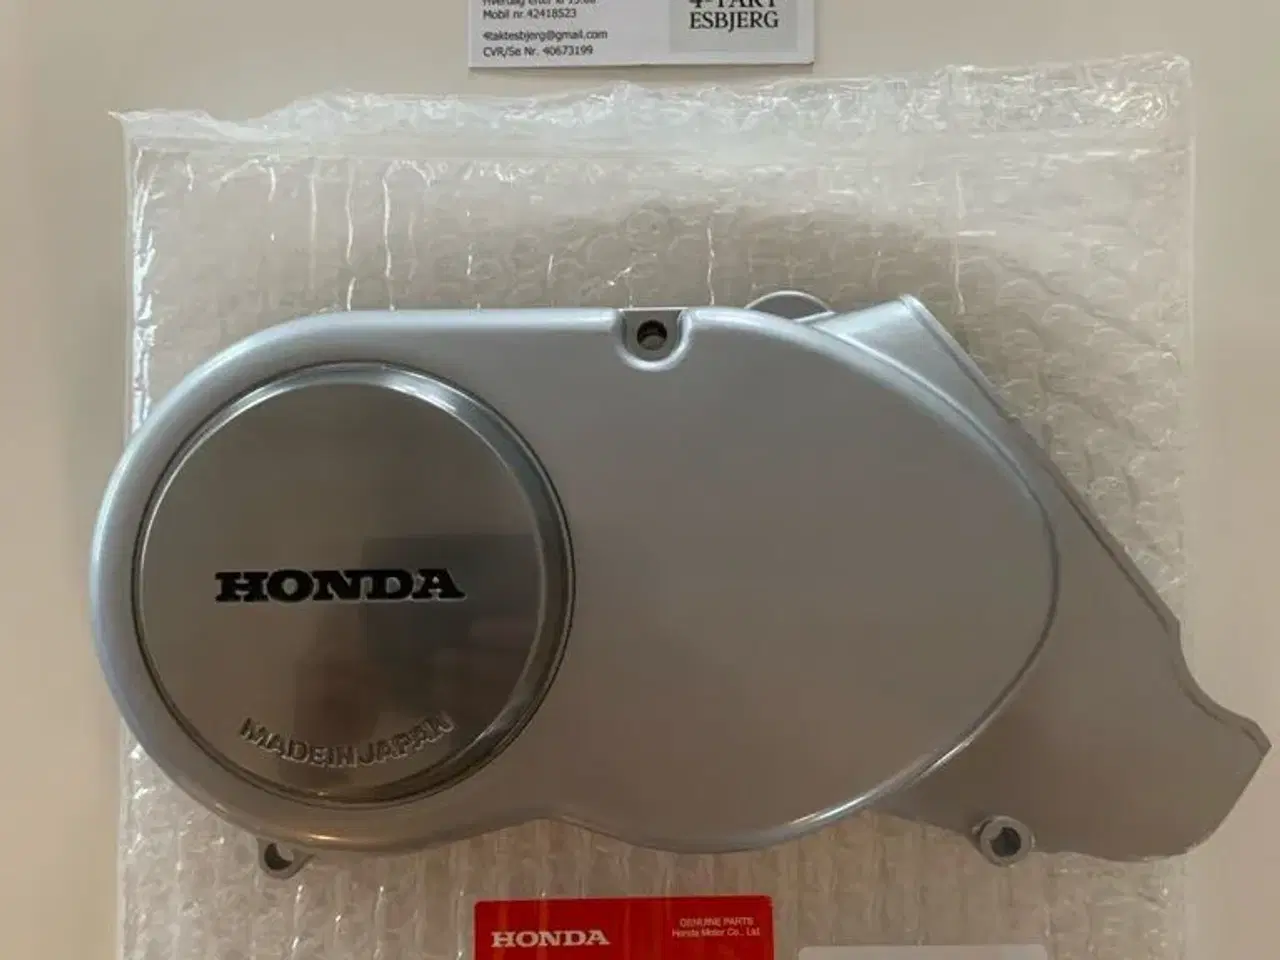 Billede 1 - Honda dax tænding dæksel